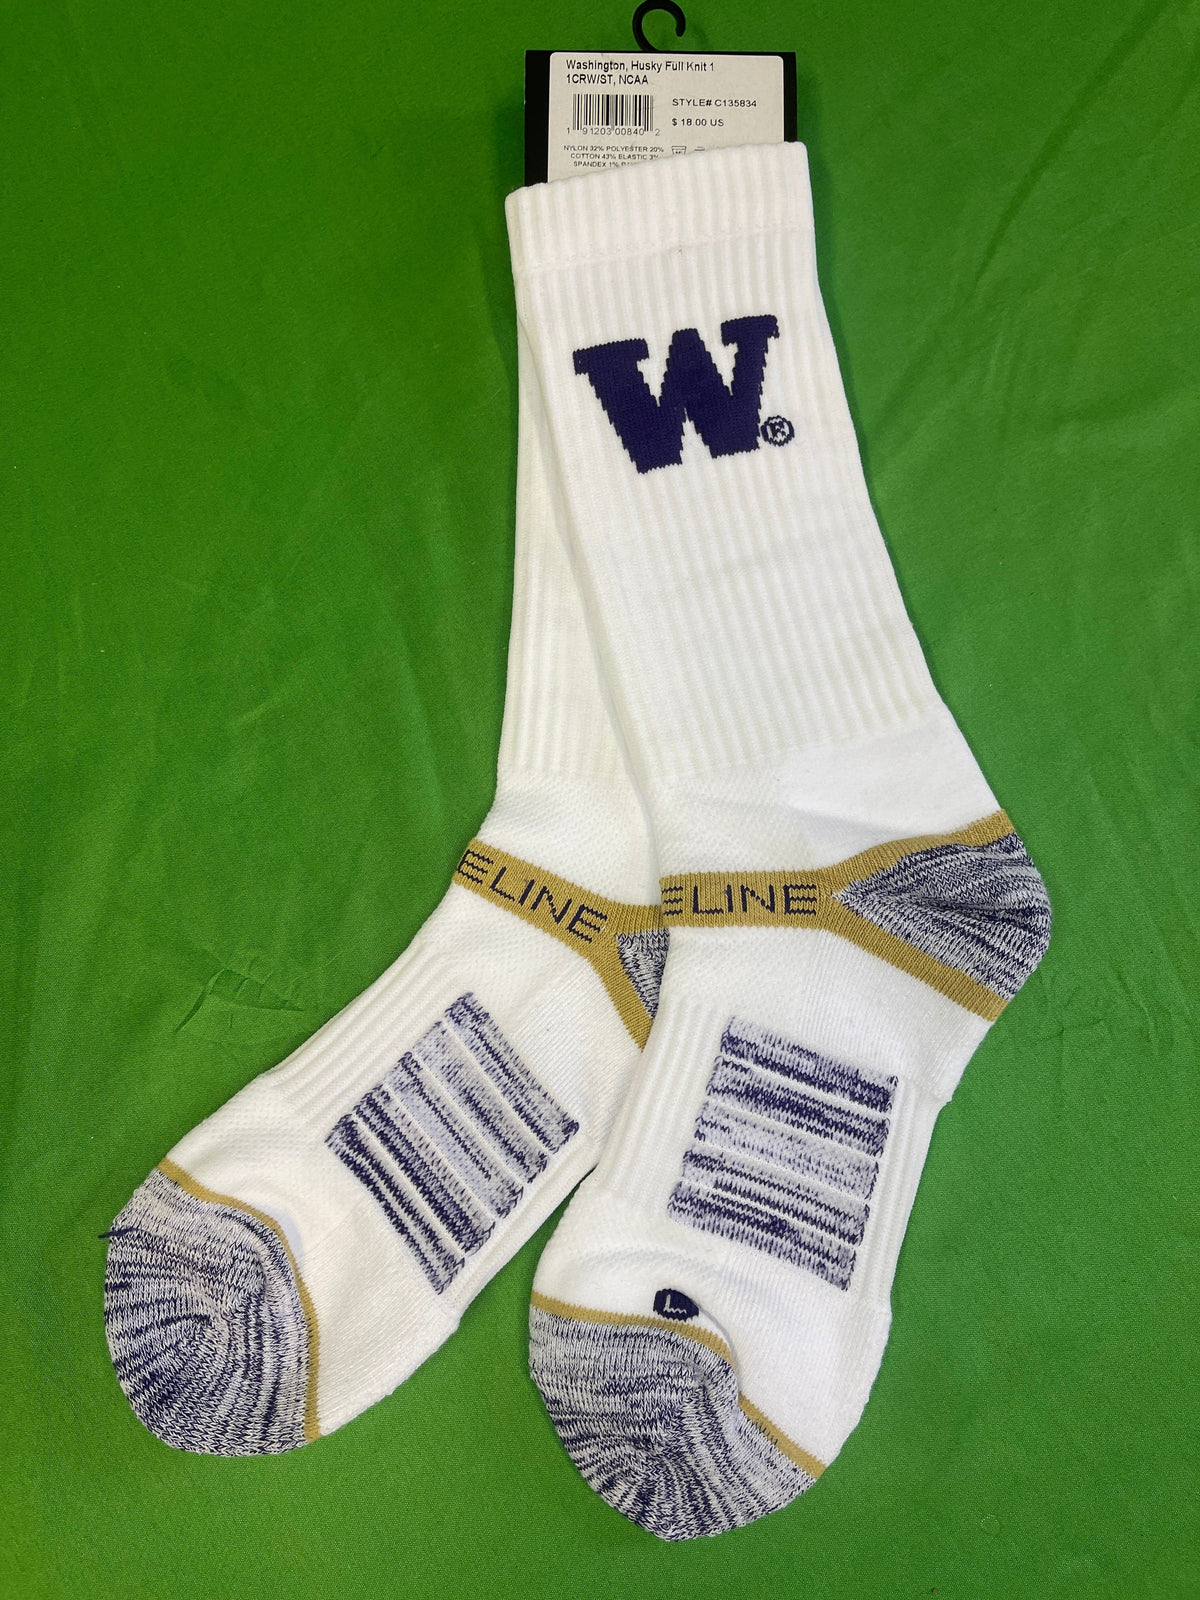 NCAA Washington Huskies White Socks Medium/Large NWT